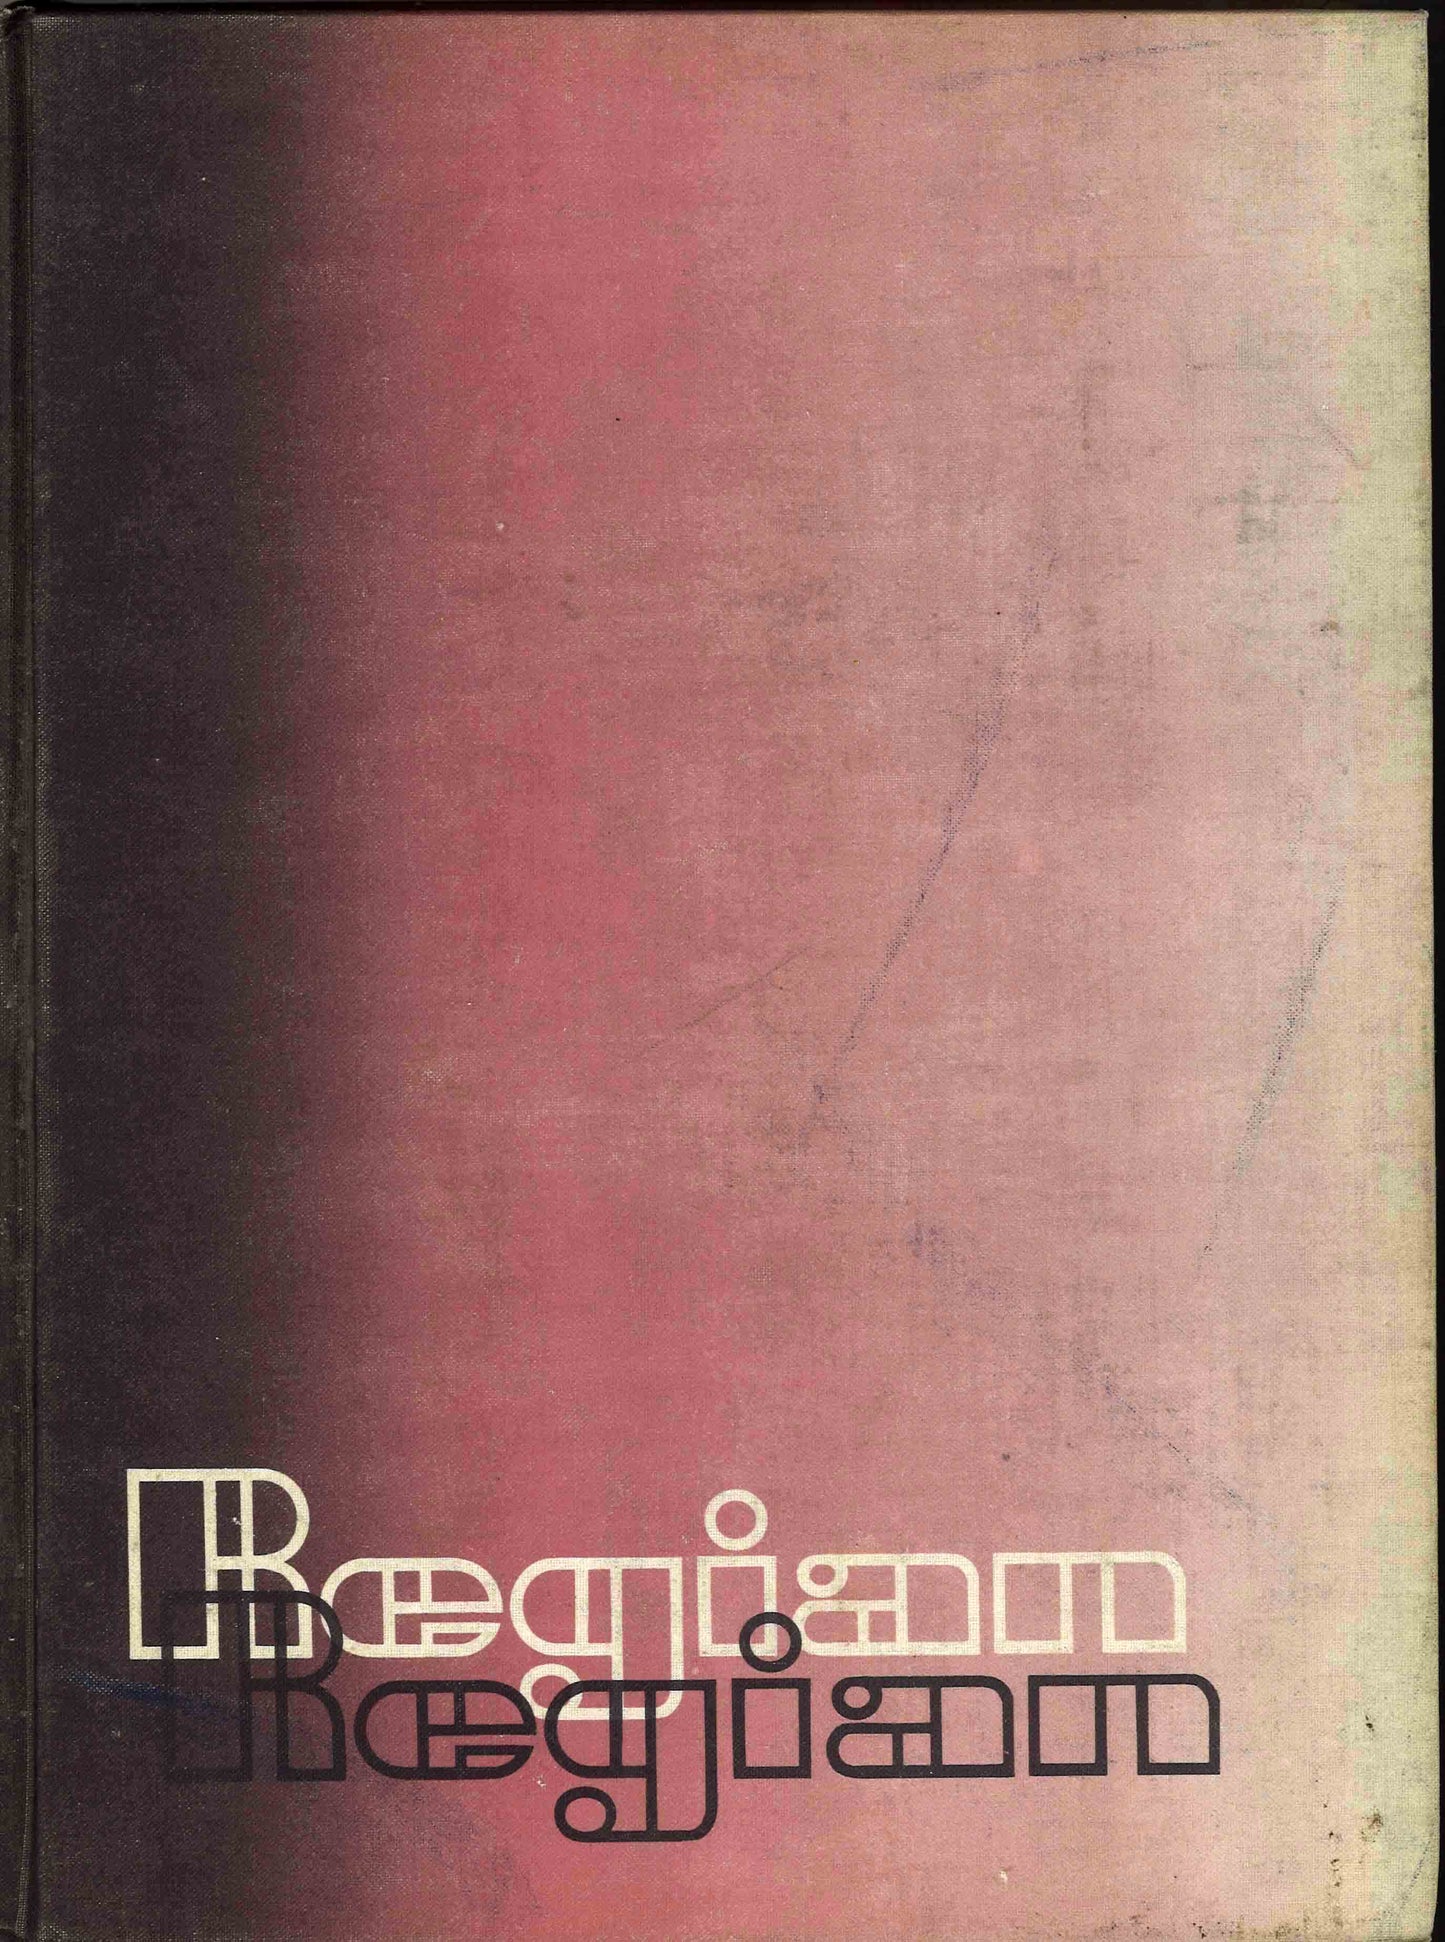 The Regian - 1970